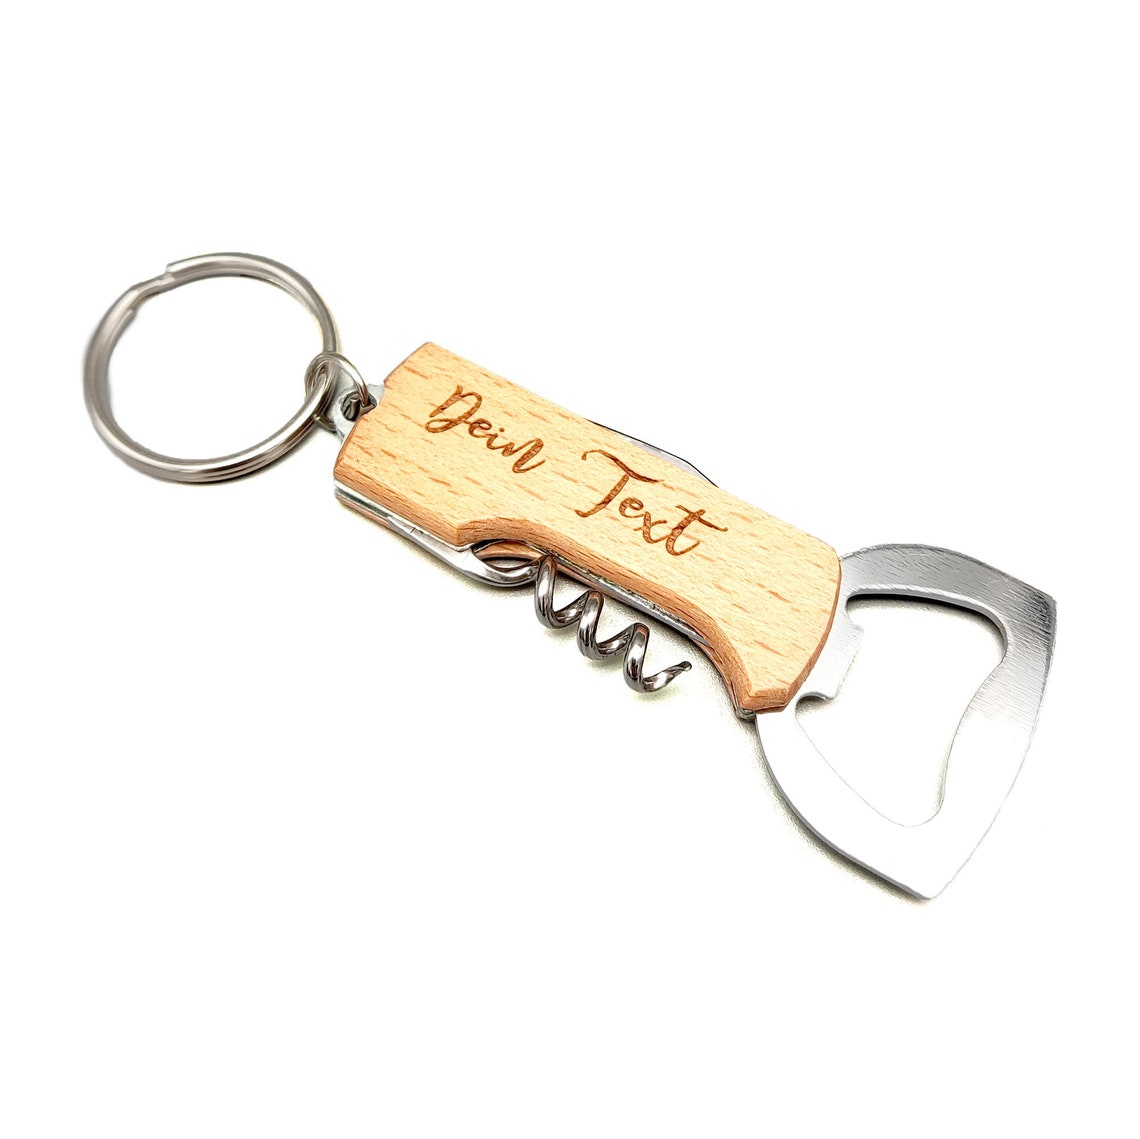 Flaschenöffner / Korkenzieher Schlüsselanhänger mit persönlicher Gravur - Personalisierte Holz Gravur